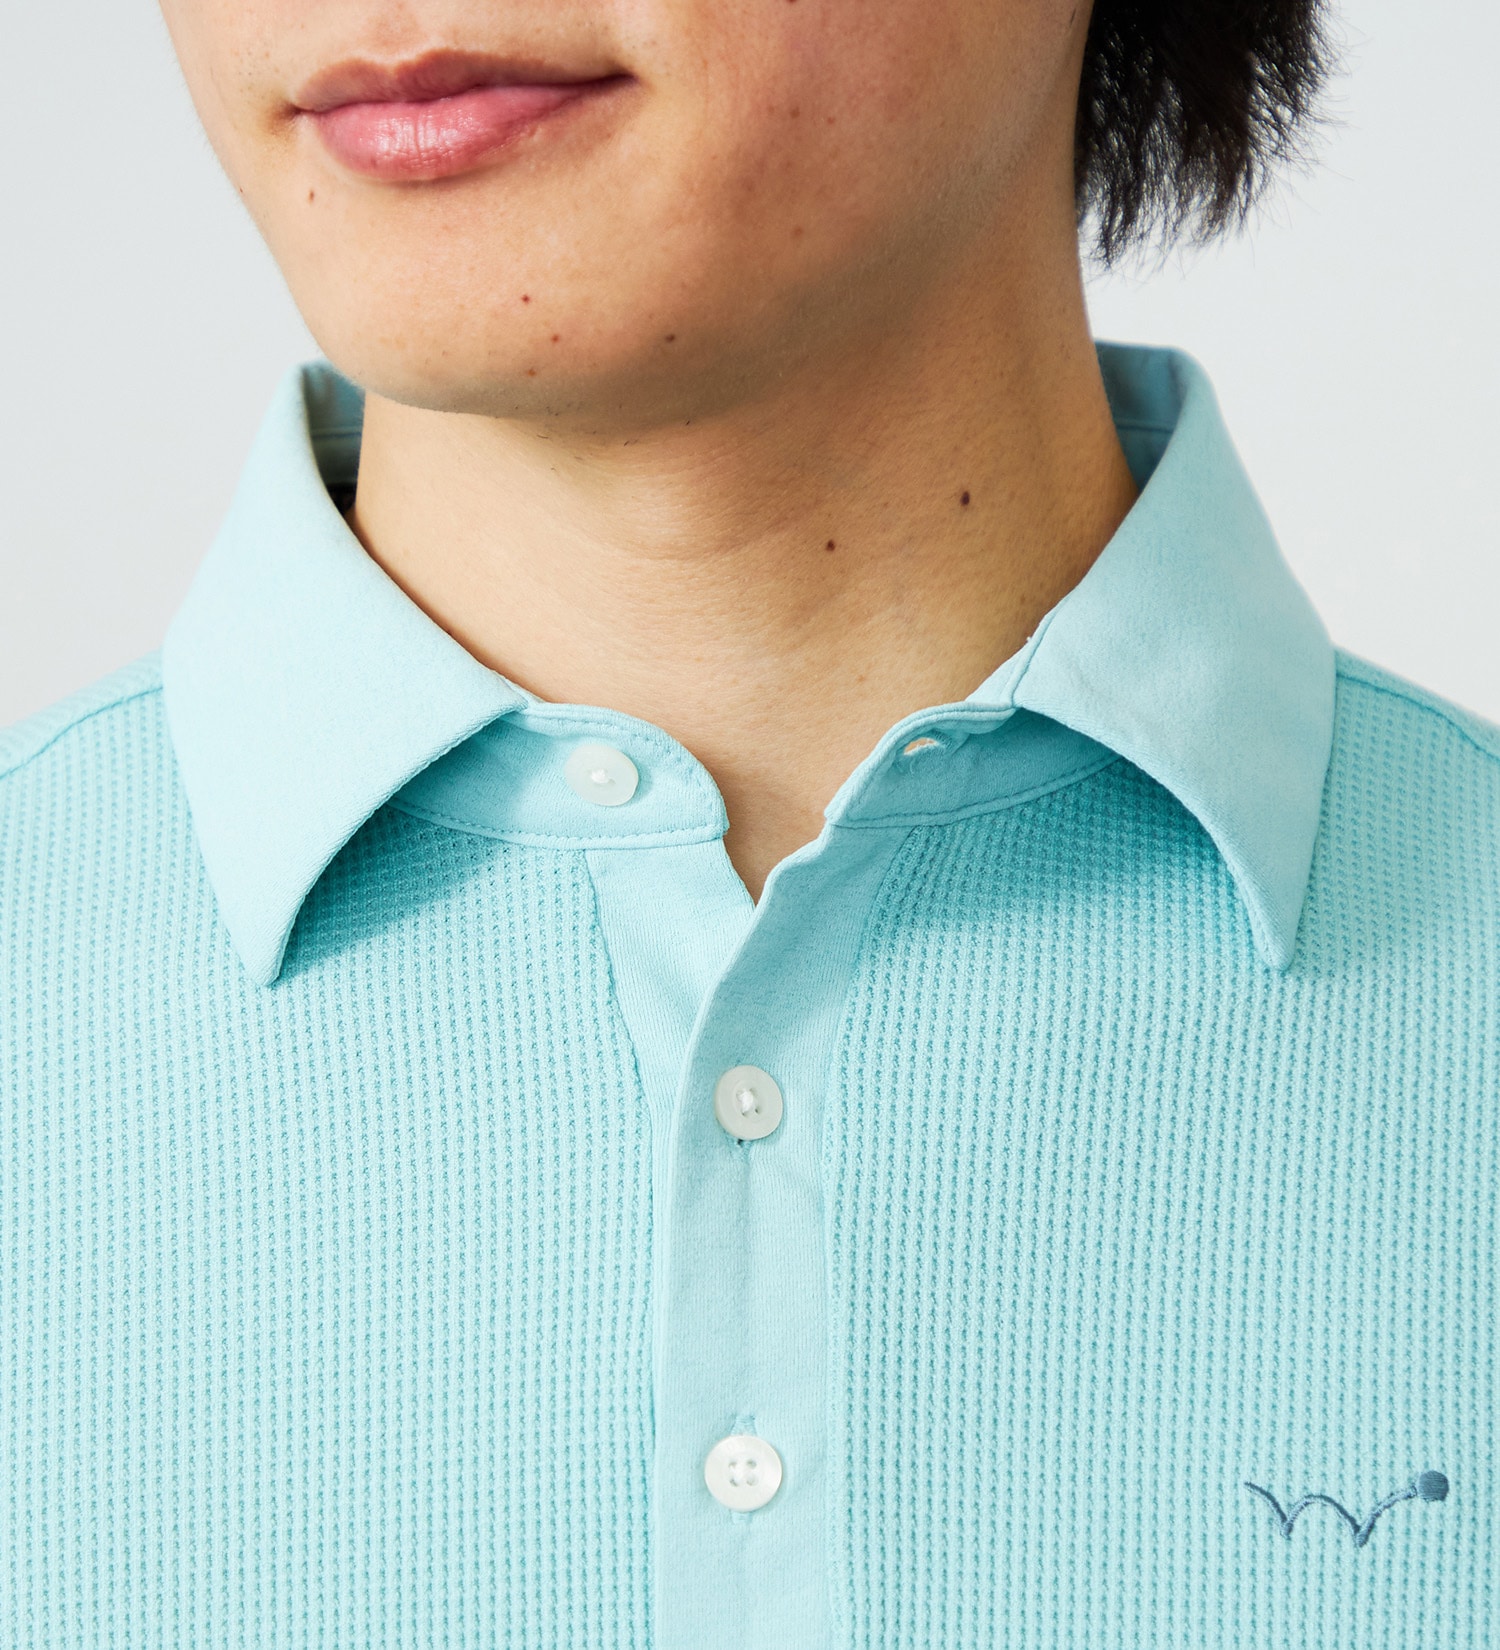 EDWIN(エドウイン)のEDWIN GOLF ミニワッフルポロシャツ半袖Tシャツ|トップス/Tシャツ/カットソー/メンズ|ミント